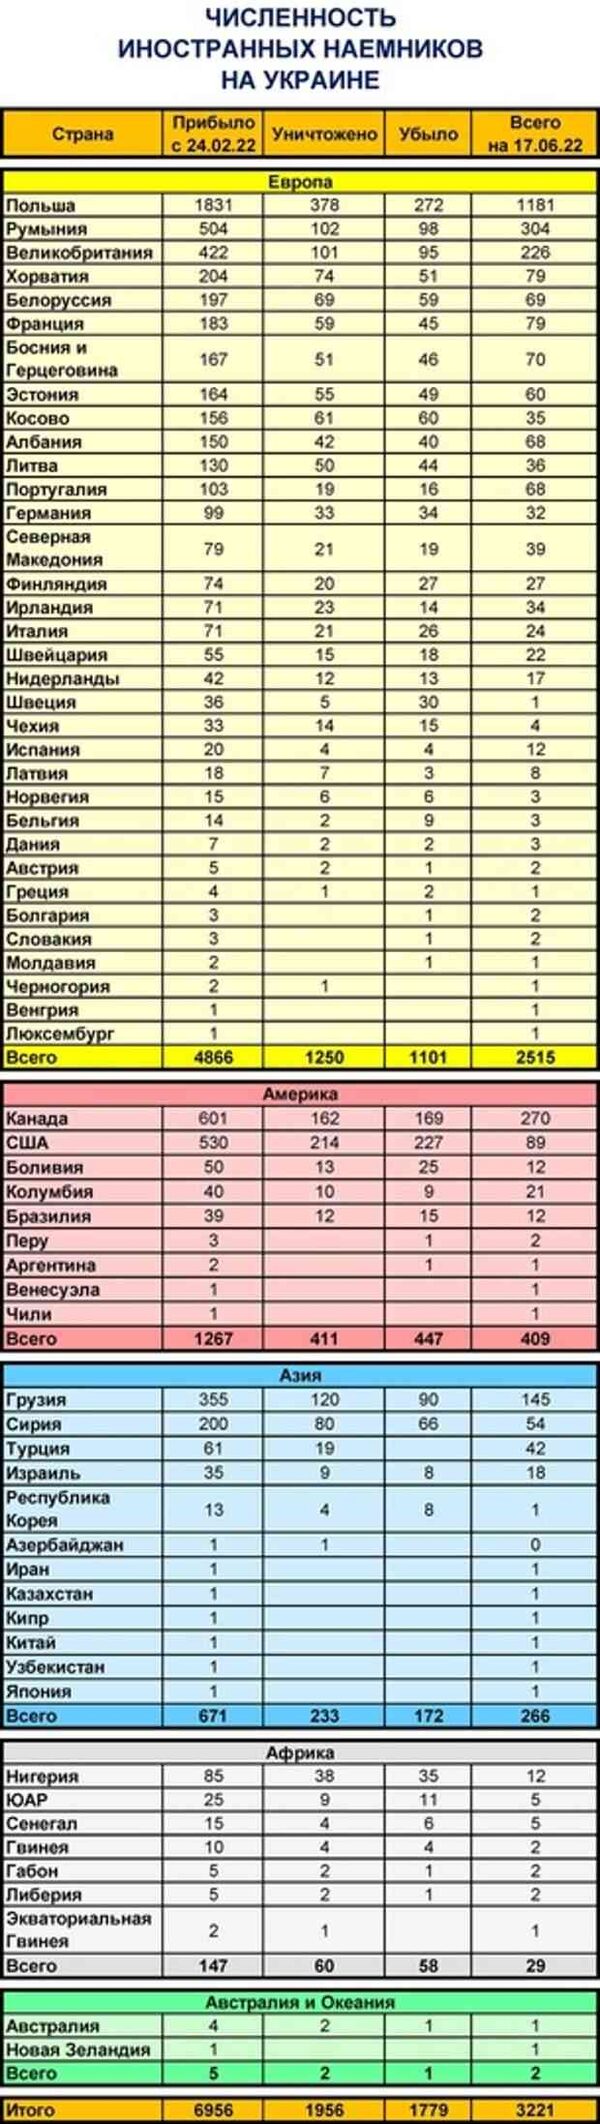 Подробные данные о численности иностранных наёмников на Украине